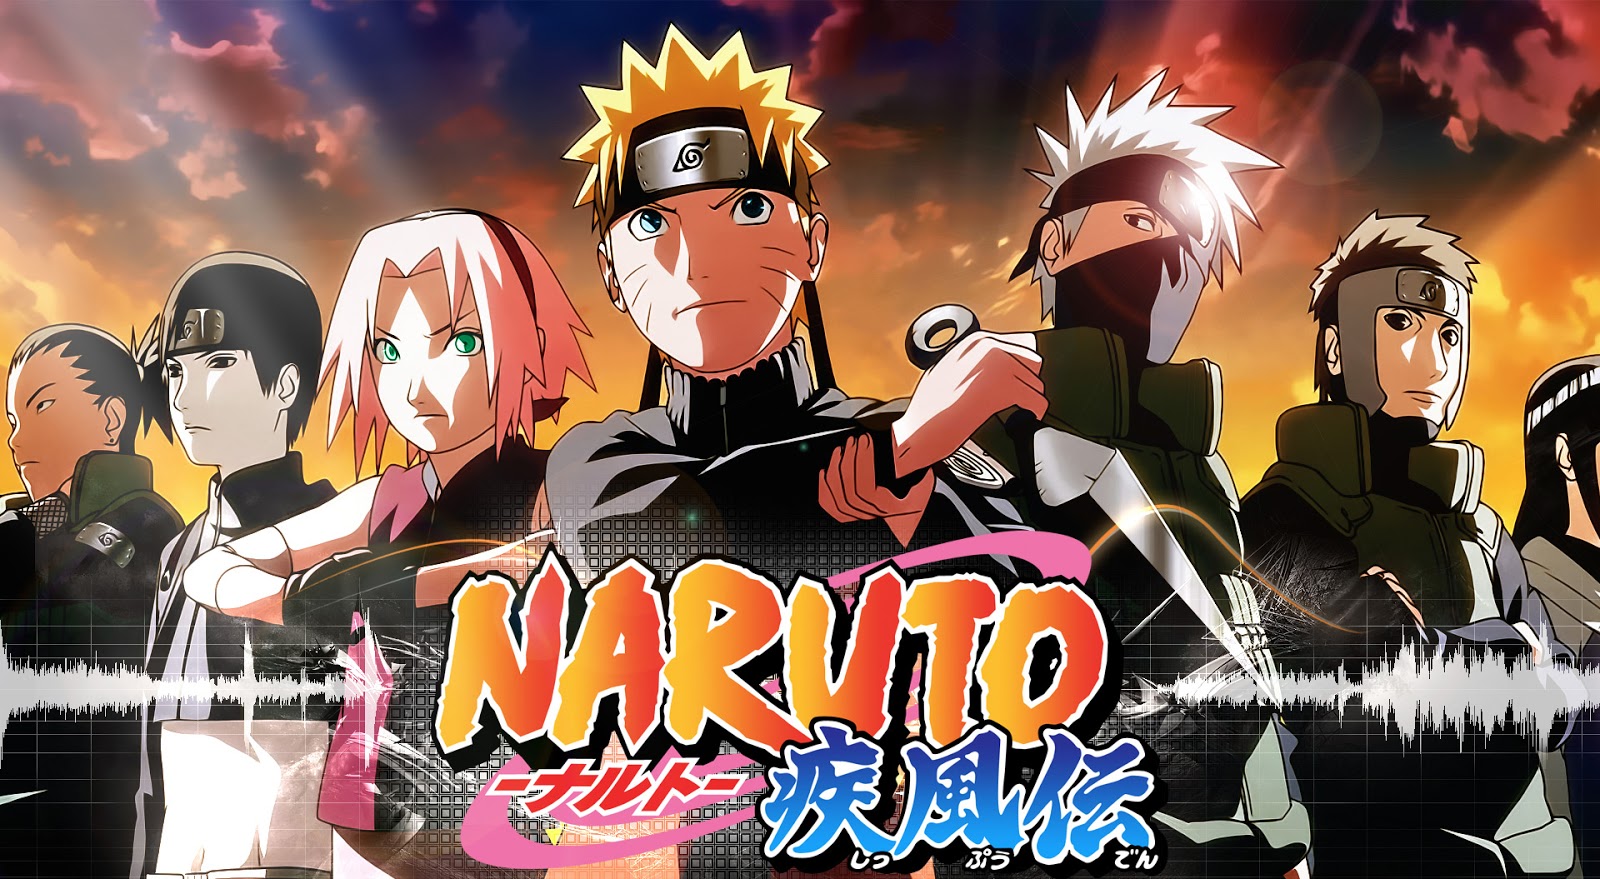 naruto shippuden episode 445 english dub download